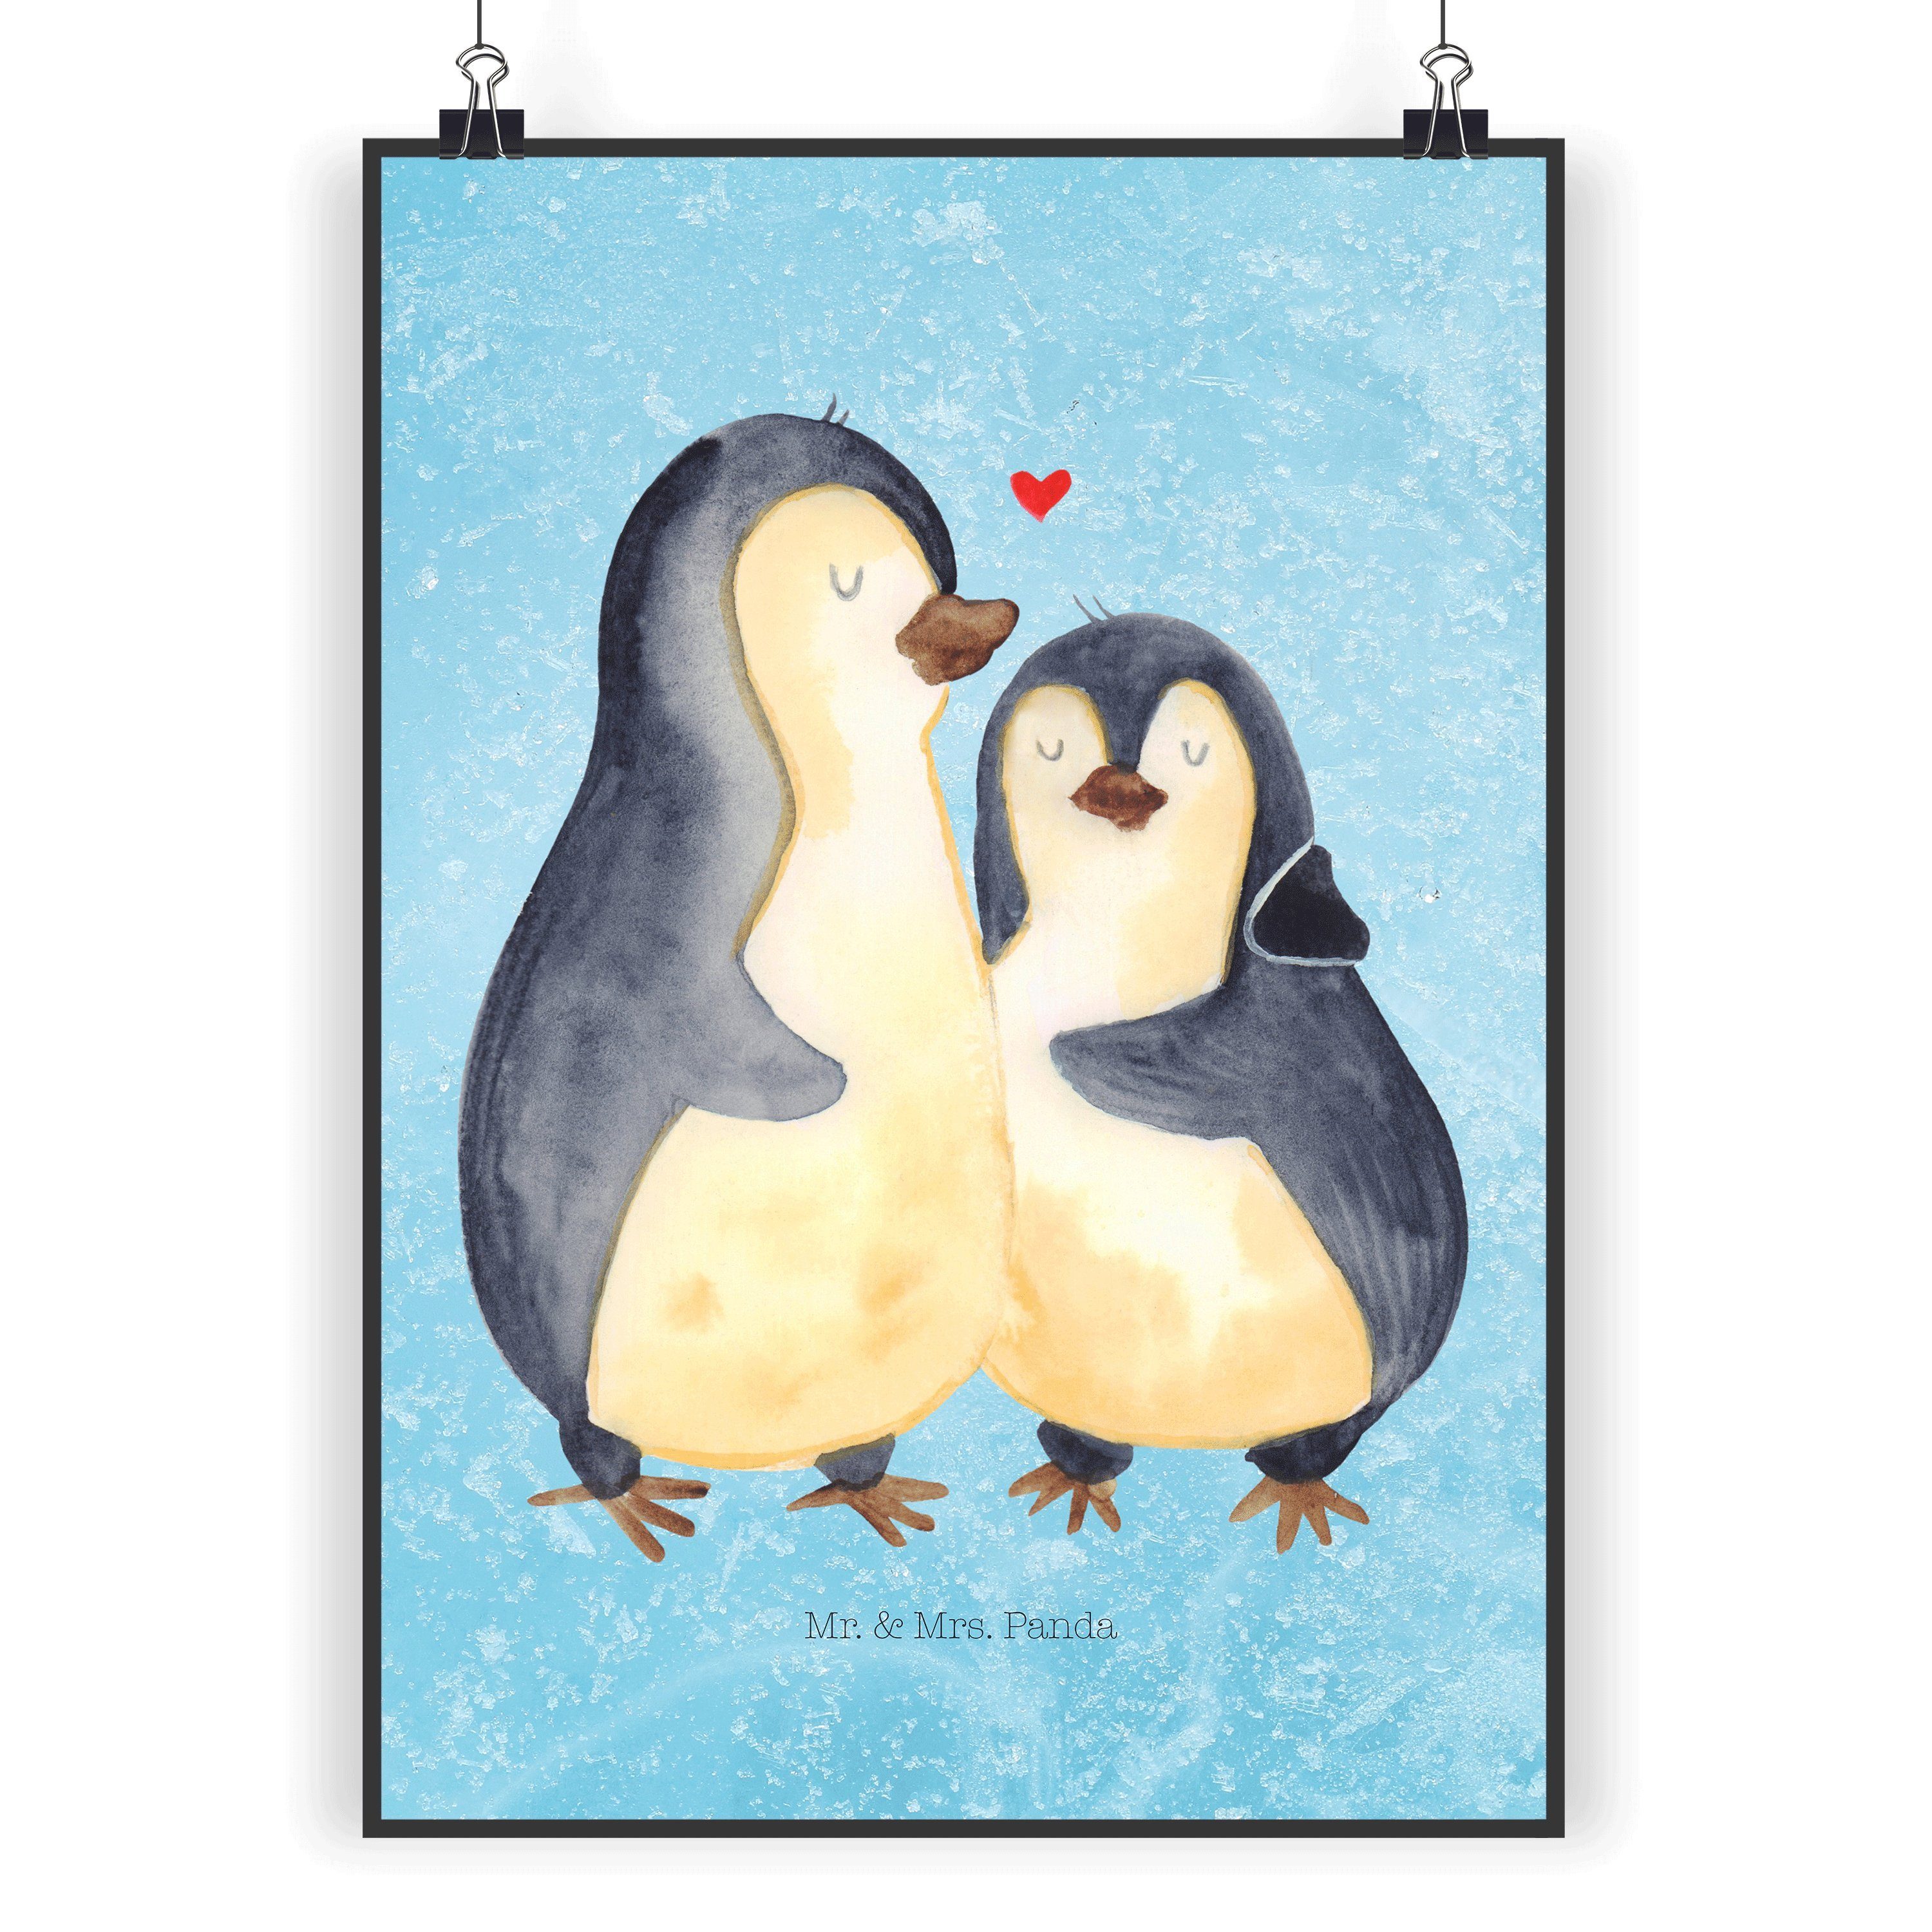 Mr. & Mrs. Panda Poster DIN A5 Pinguin umarmend - Eisblau - Geschenk, Paar, Liebespaar, Raumd, Pinguin umarmend (1 St)